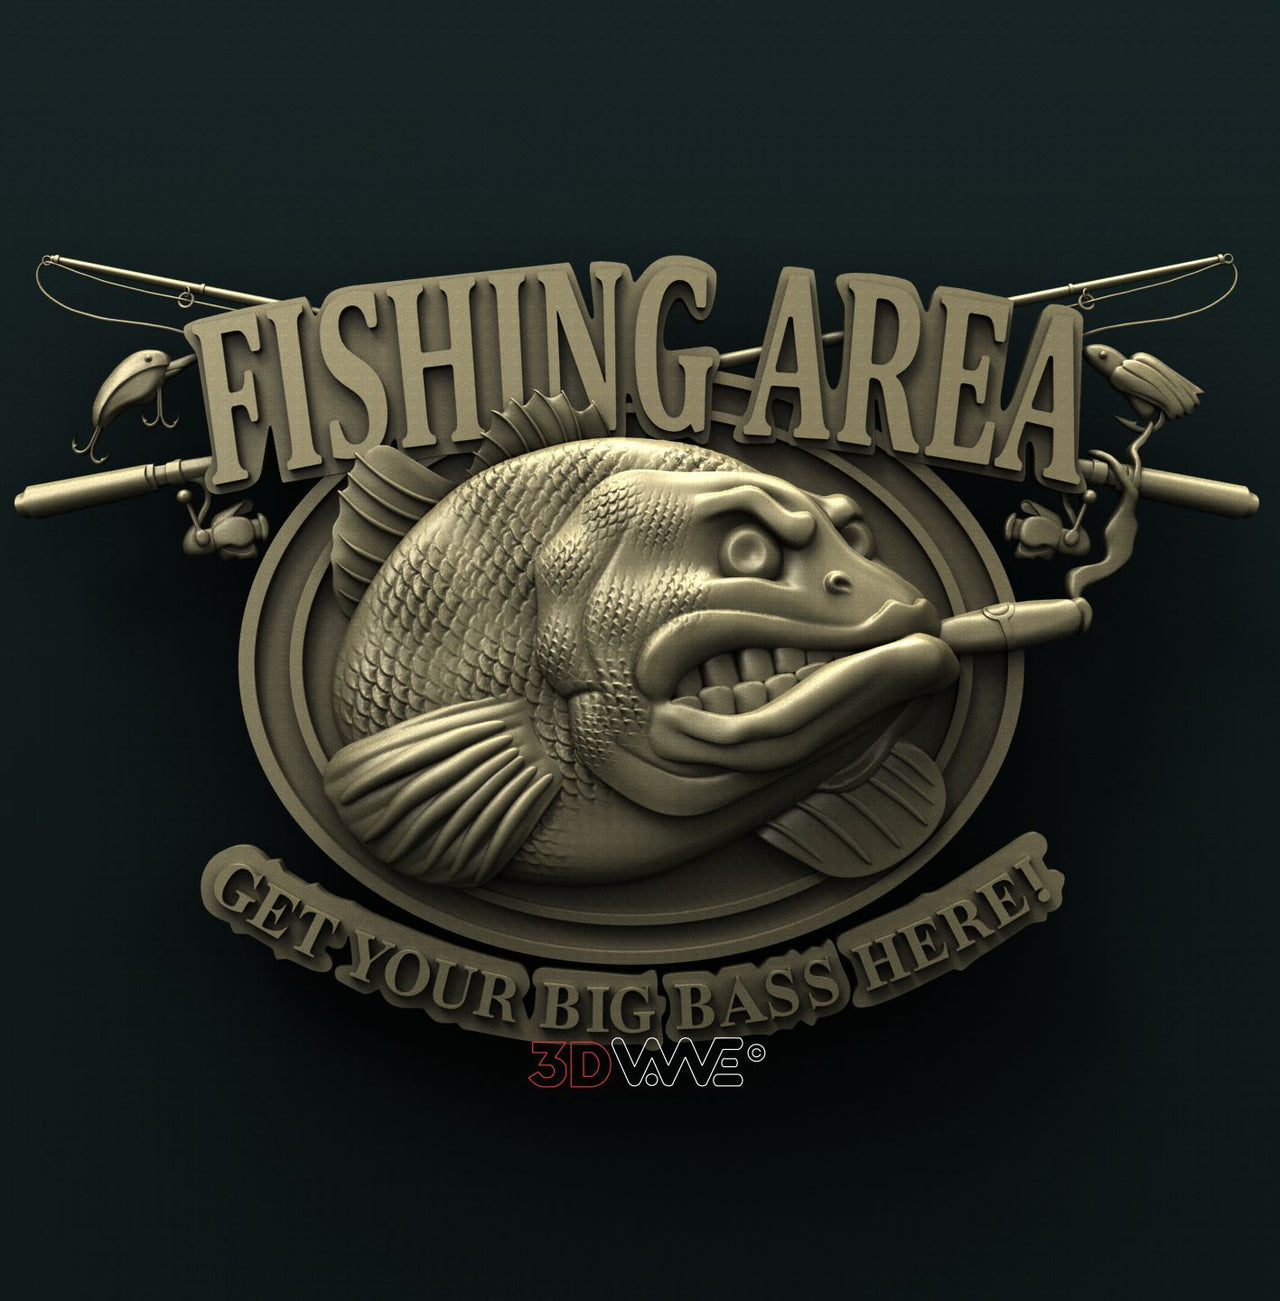 FISHING AREA SIGN 3D STL 3DWave